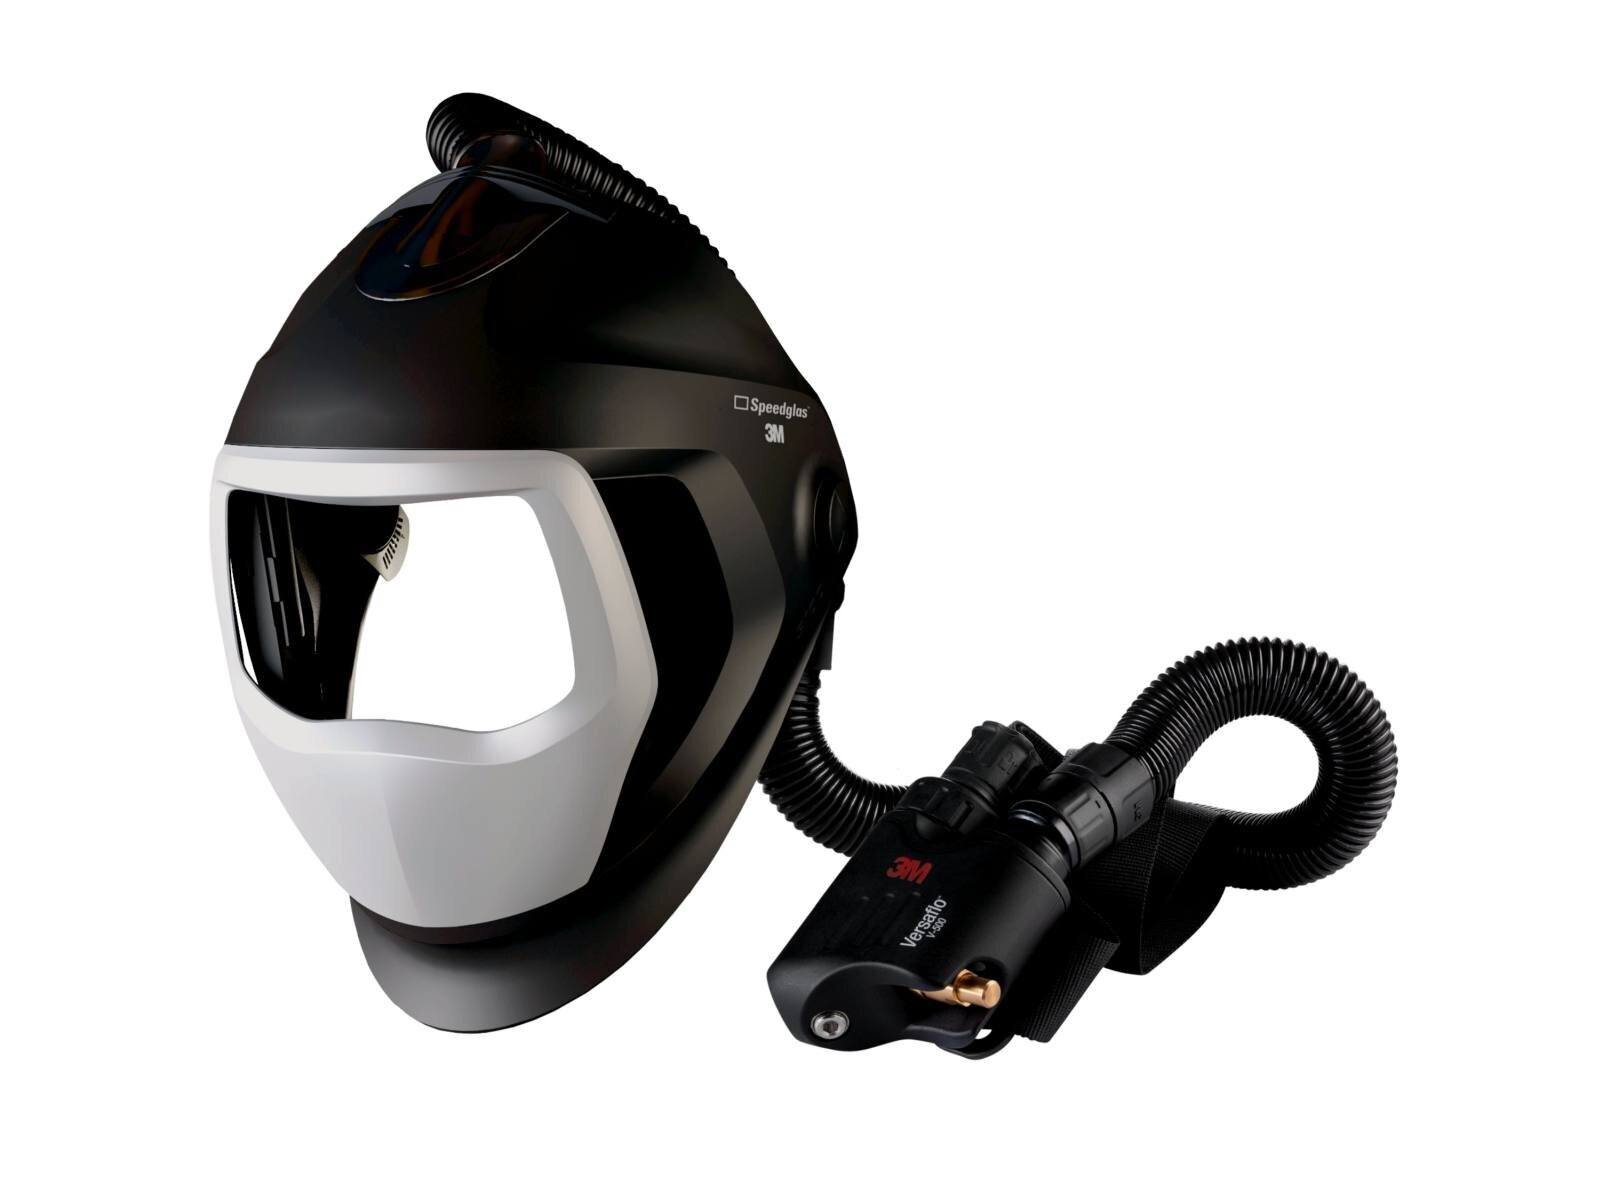 3M Speedglas lasmasker 9100 Air zonder ADF, met Versaflo V-500E persluchtademhalingsbescherming, luchtslang QRS, adapter 5333506, luchtdebietmeter incl. opbergtas #568500